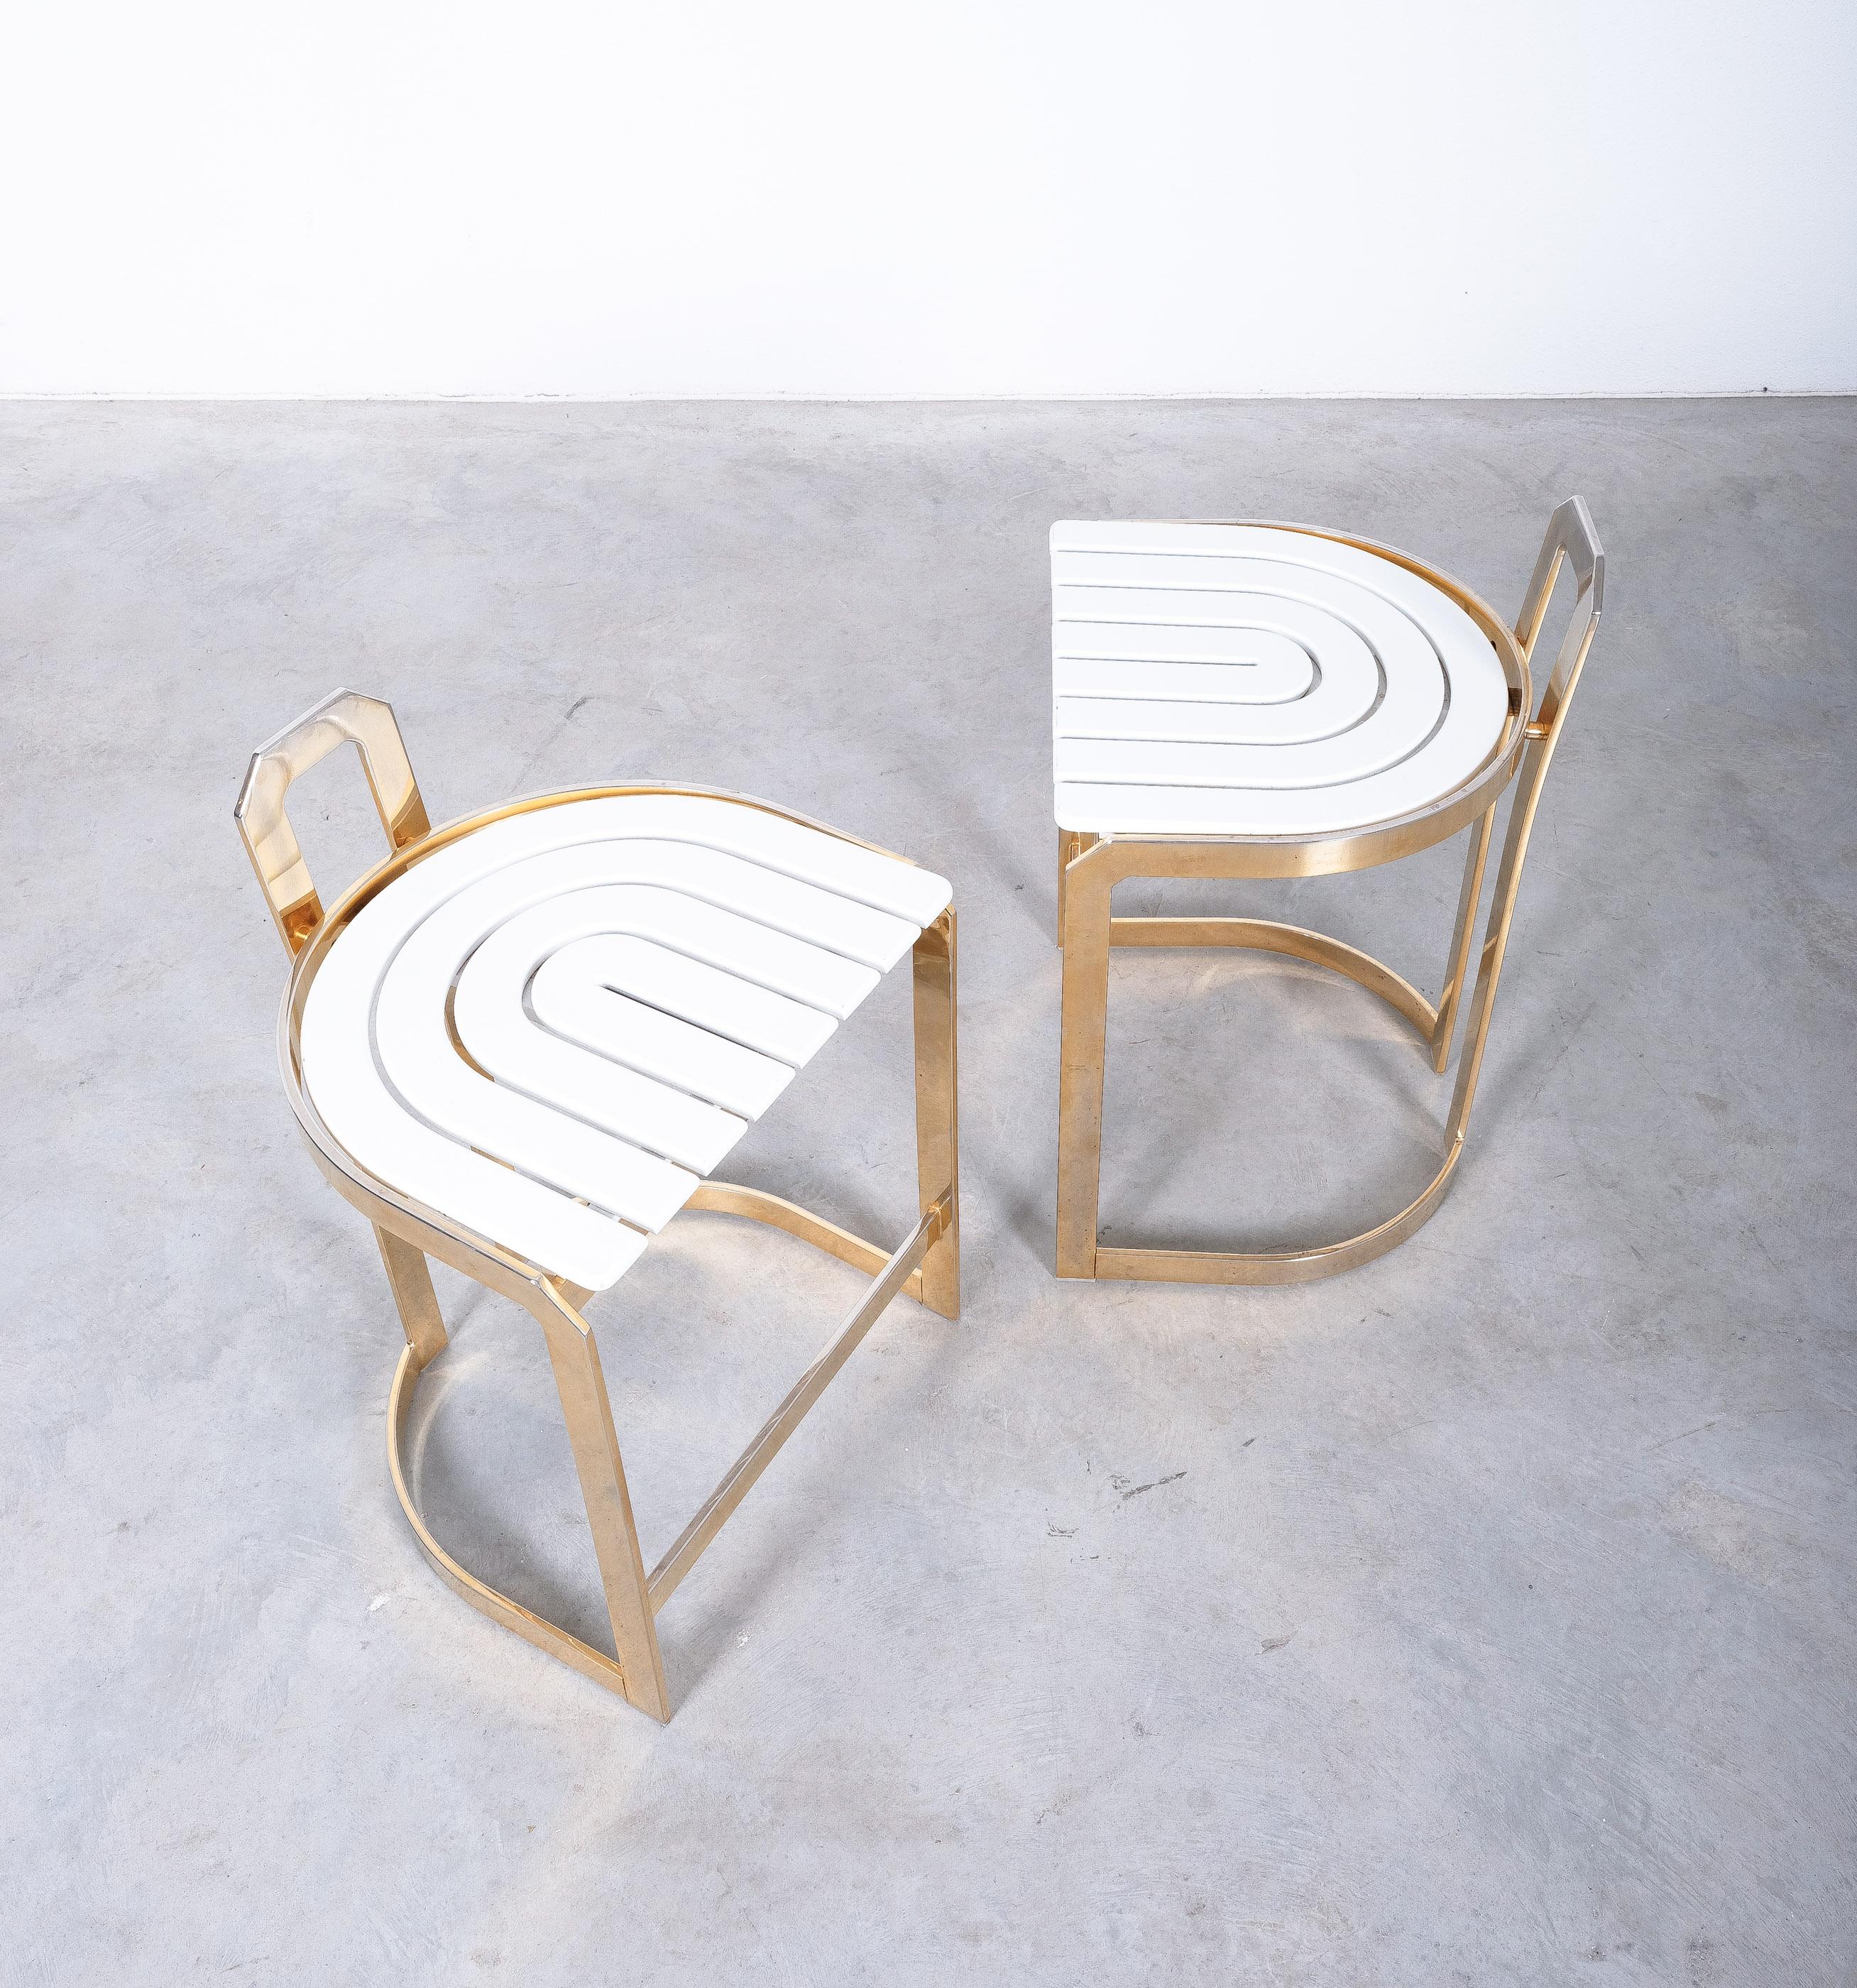 Paar weiß-goldene Barhocker aus Italien, um 1970 - Preis für ein Paar

Sehr stilvolles Paar Barhocker mit einem graphischen Sitz aus weißem Holz und einem Gestell aus vermessingtem Stahl. Sie wurden wahrscheinlich in den späten 1970er Jahren in